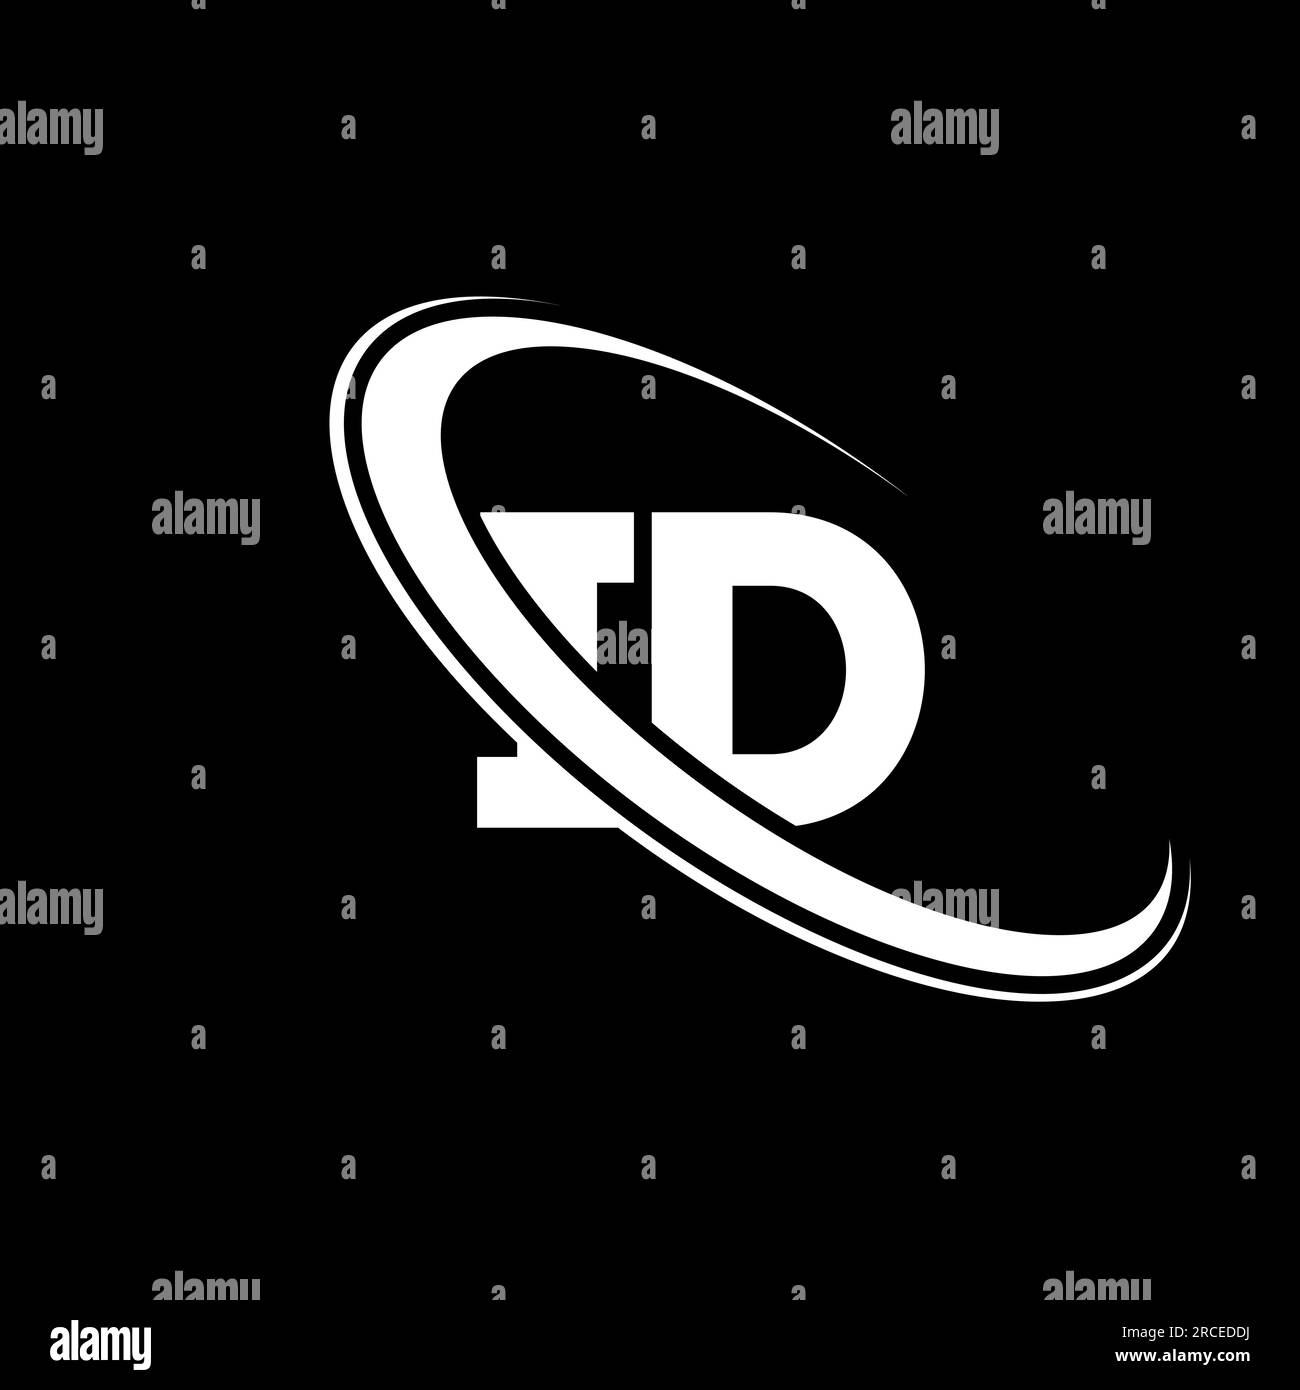 ID logo. I D design. White ID letter. ID/I D letter logo design. Initial letter ID linked circle uppercase monogram logo. Stock Vector